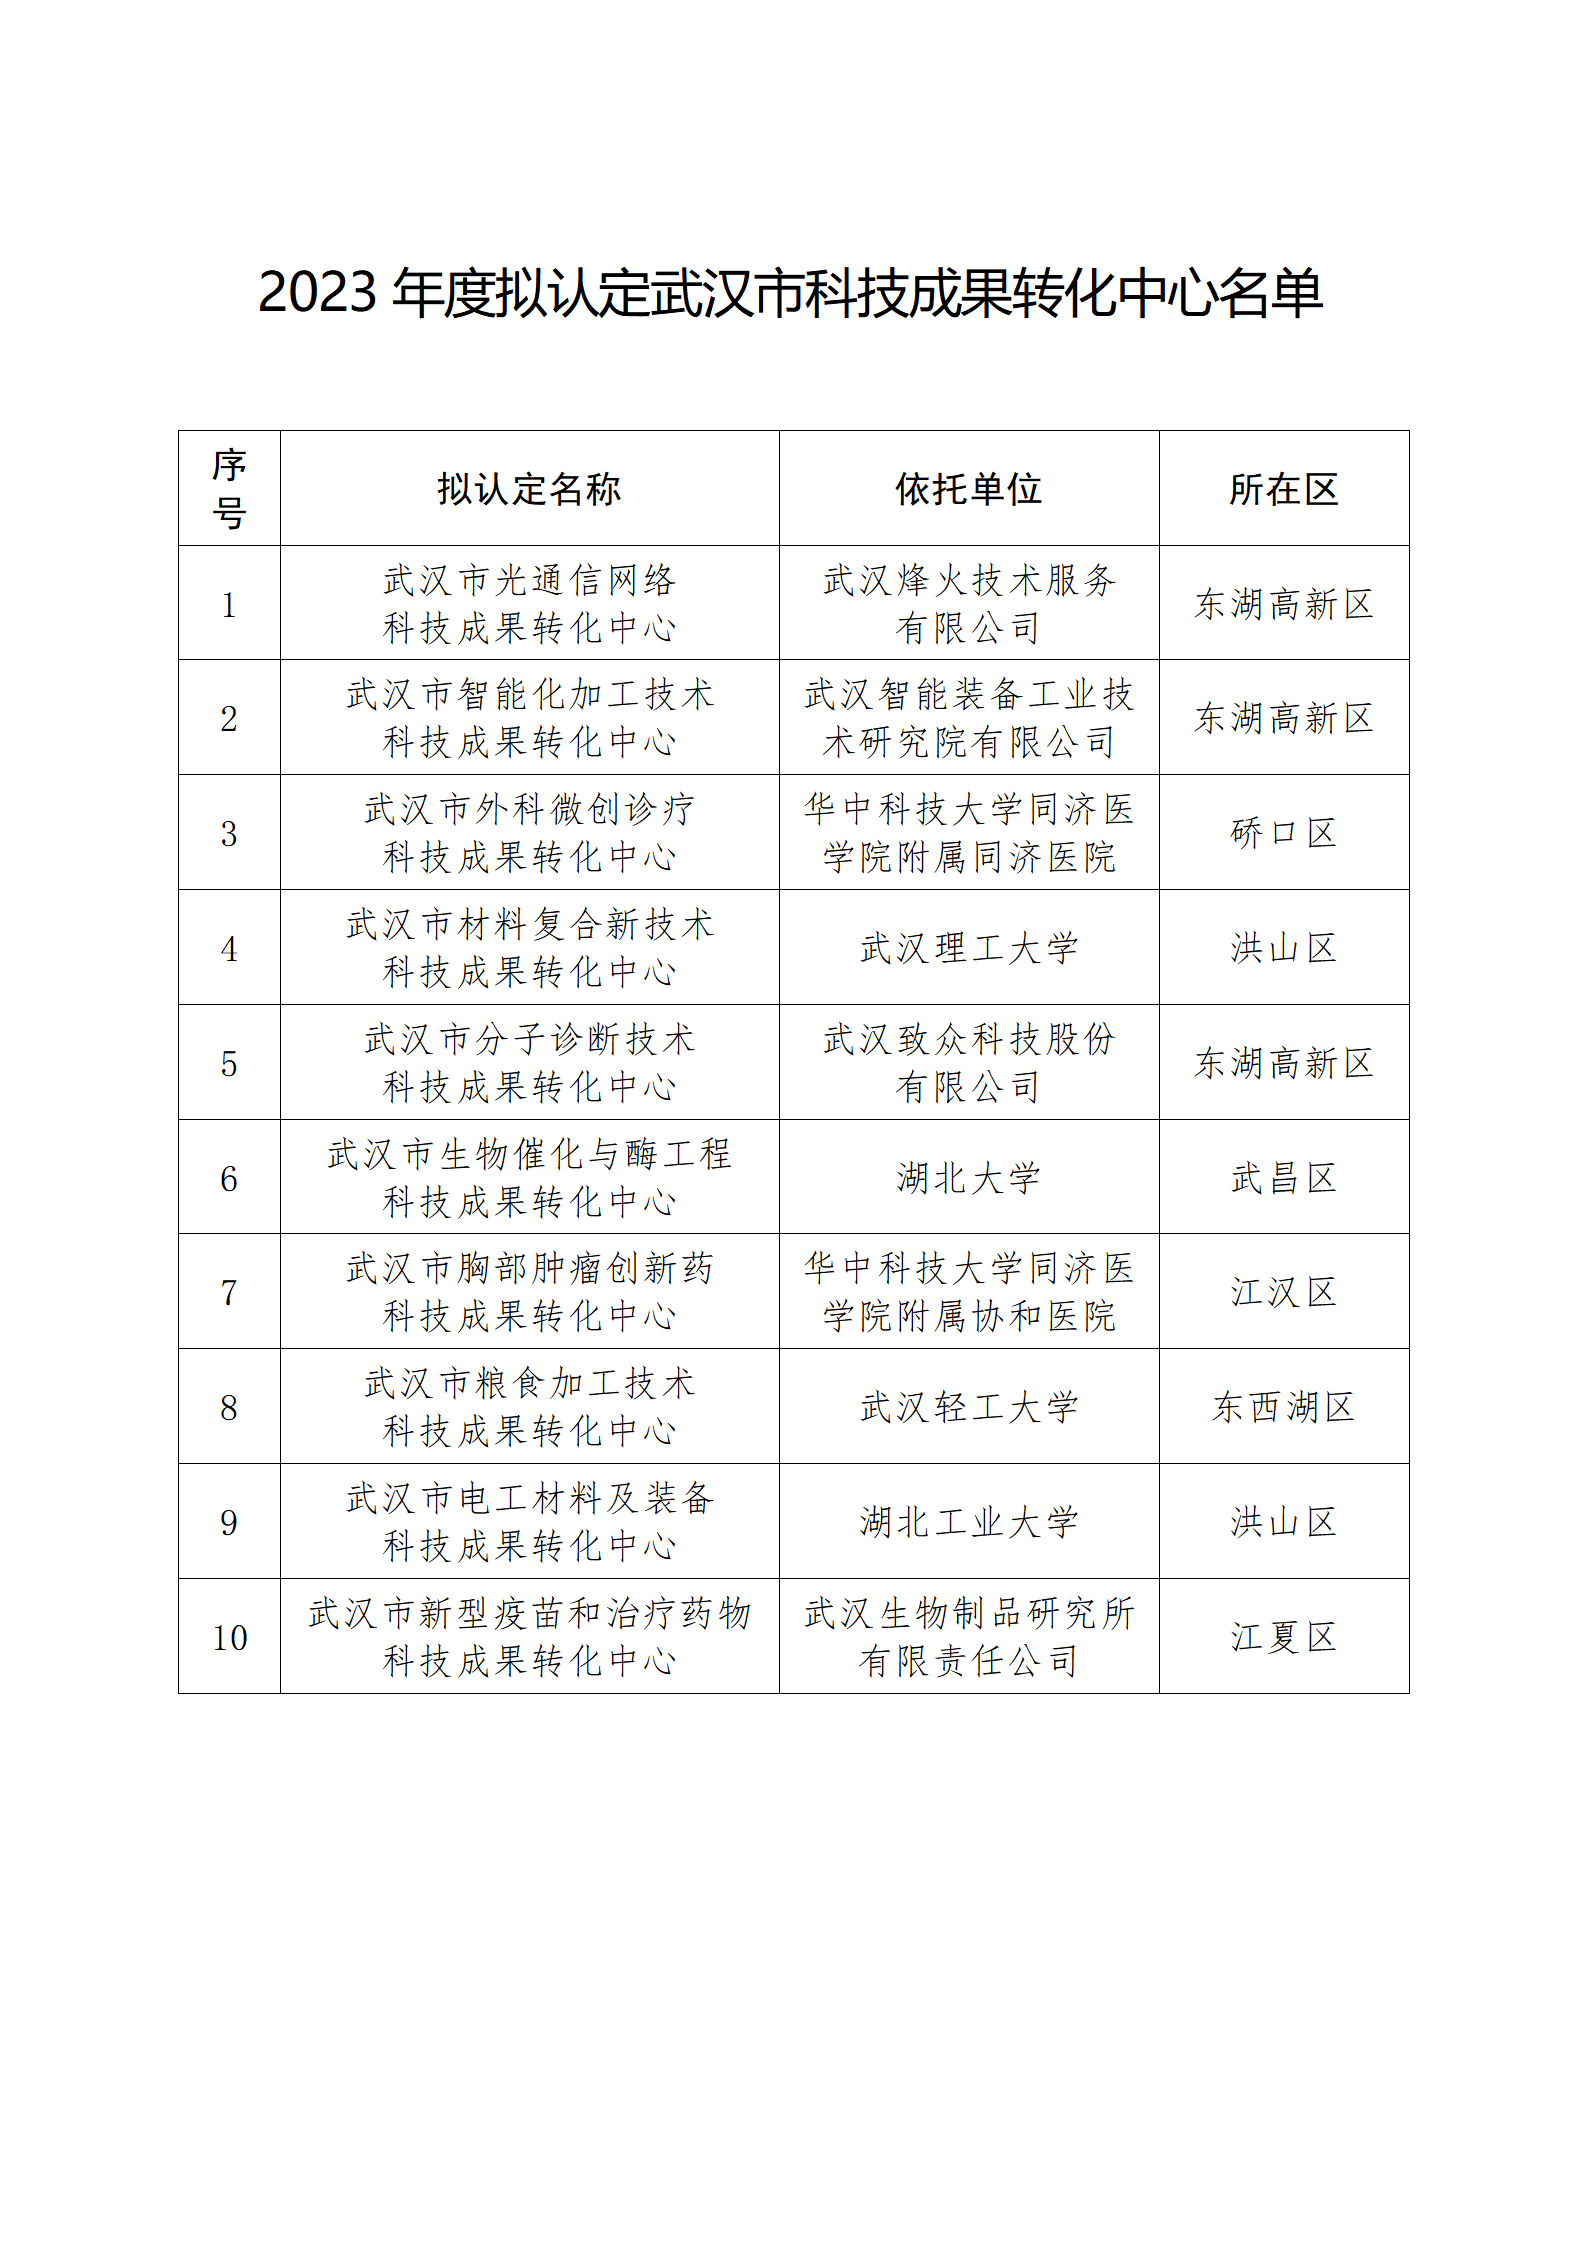 2023年度拟认定武汉市科技成果转化中心名单_01.png